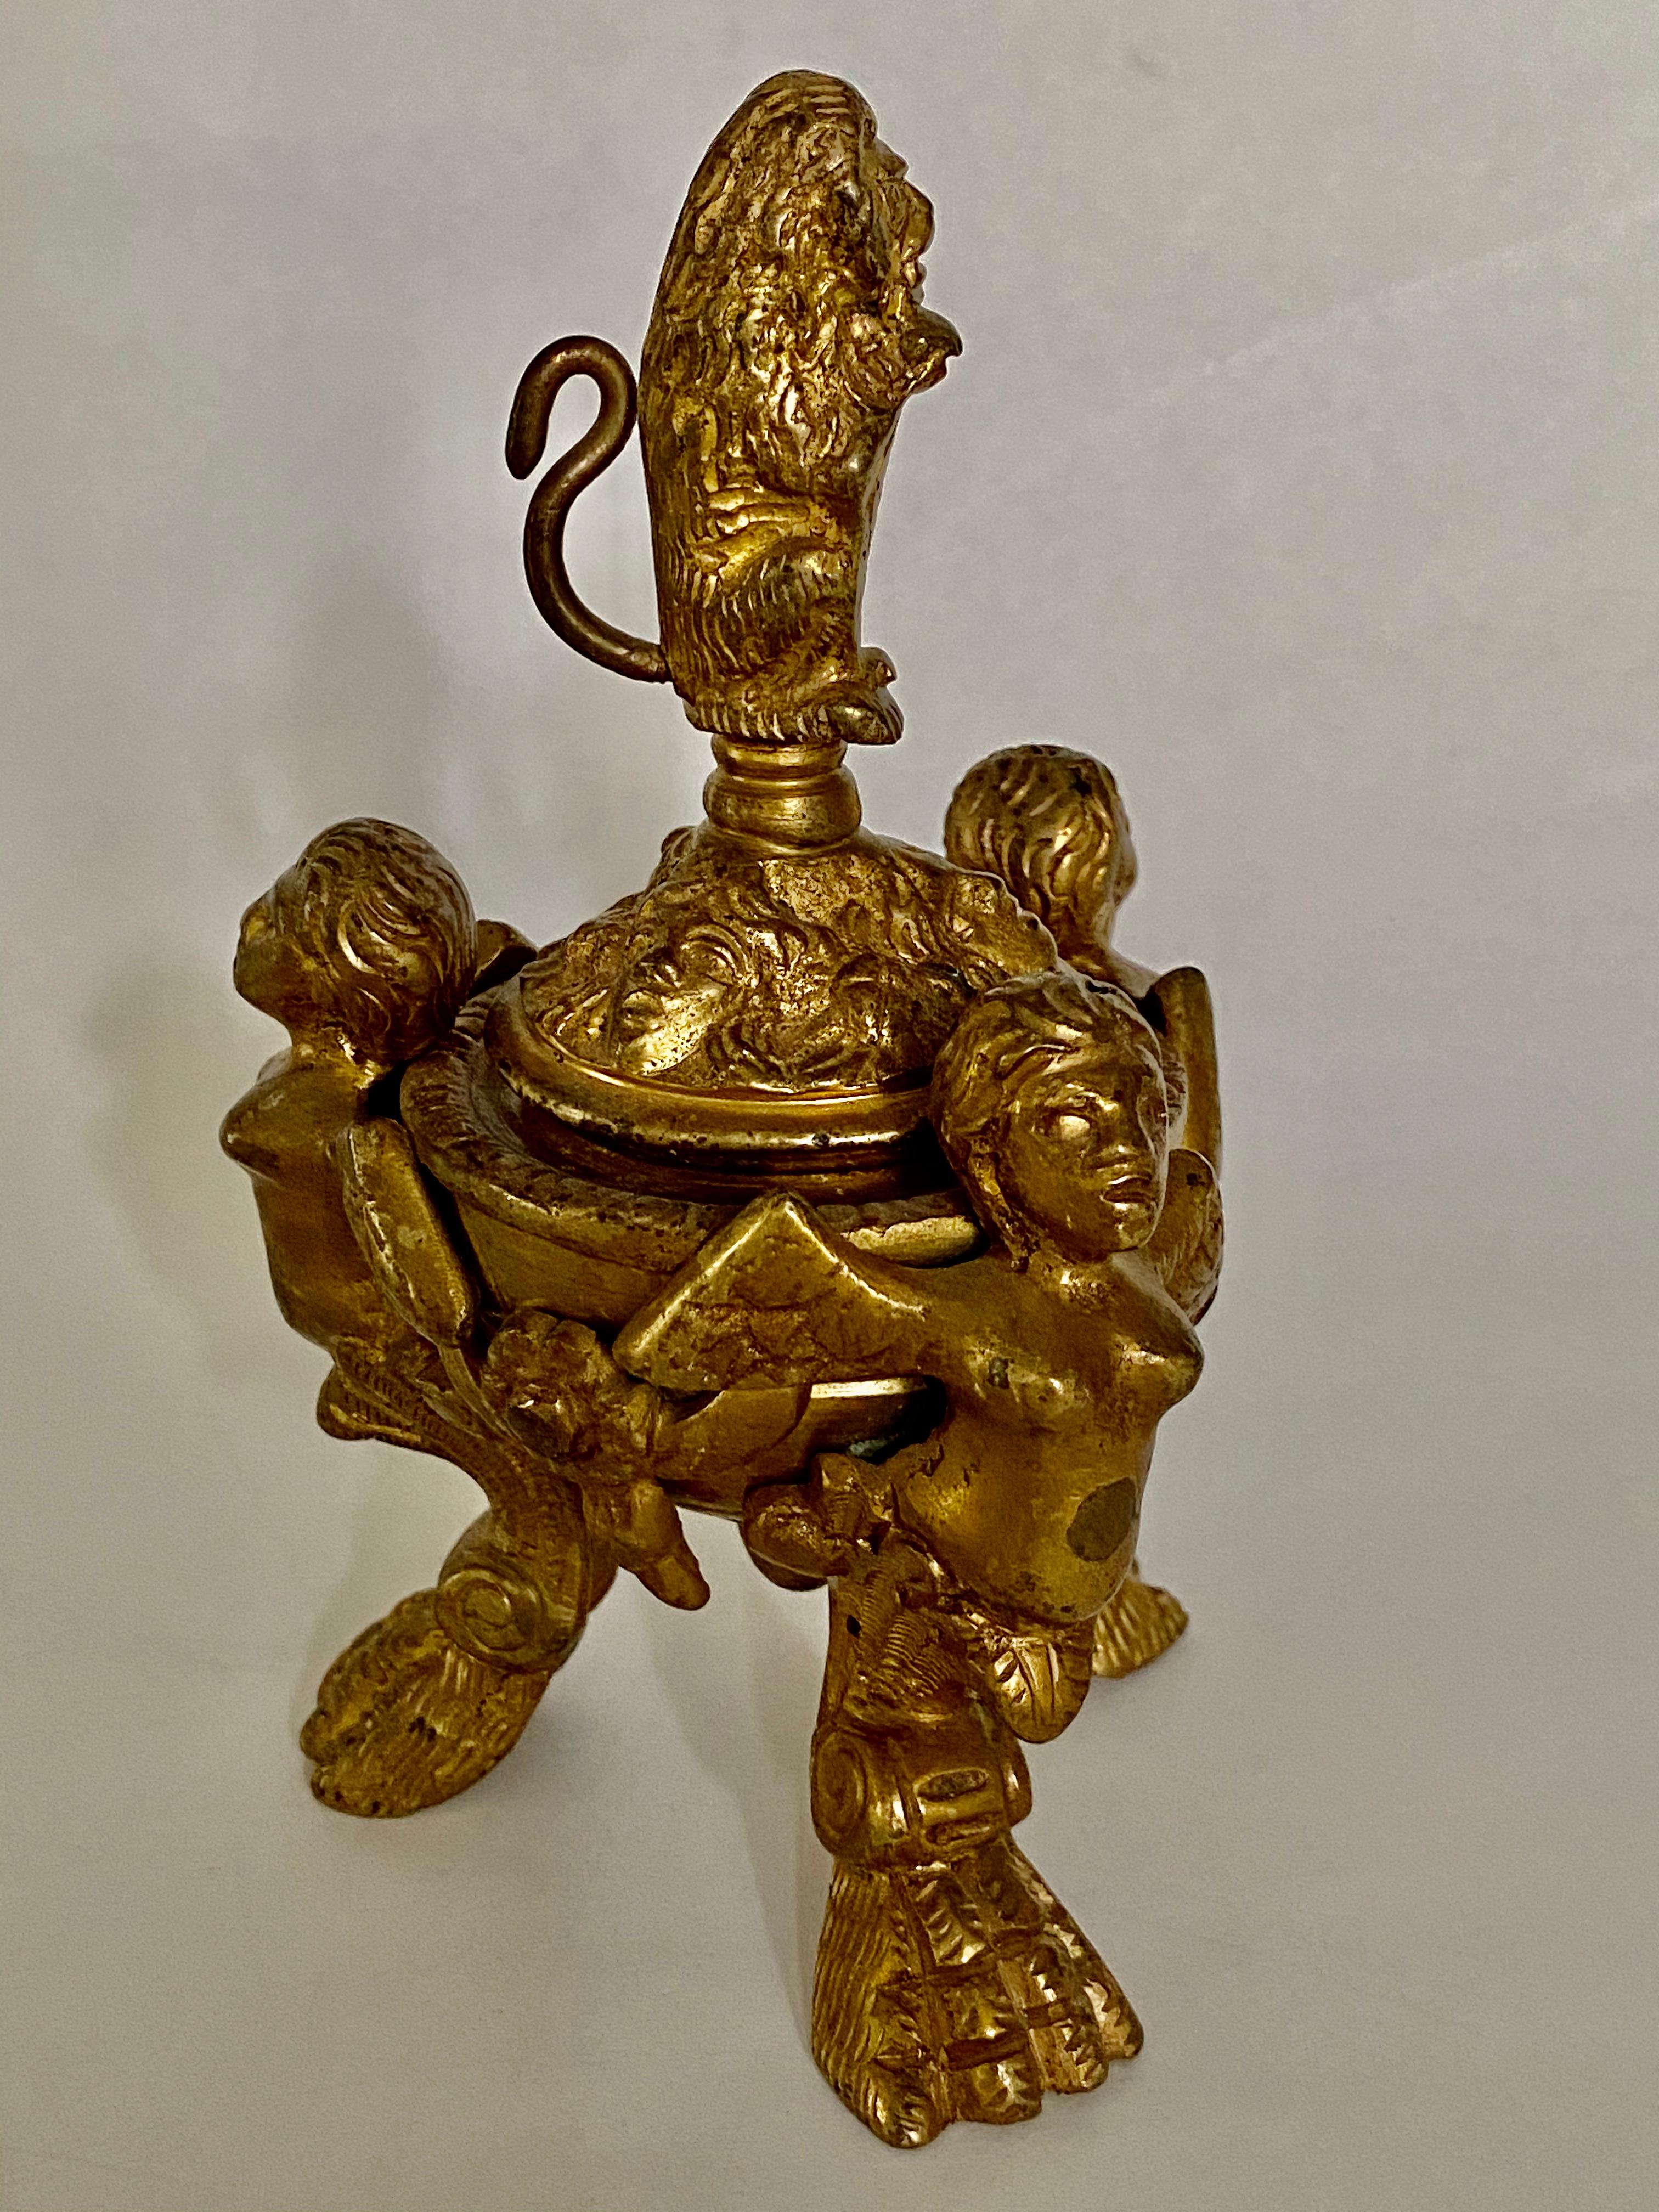 Nach einem venezianischen Entwurf aus dem 16. Jahrhundert stützen geflügelte Putten mit Krallenbeinen ein gedrehtes Bronzetintenfass, dessen Deckel mit Masken und Girlanden verziert ist und von einem Löwen mit Schild überragt wird.